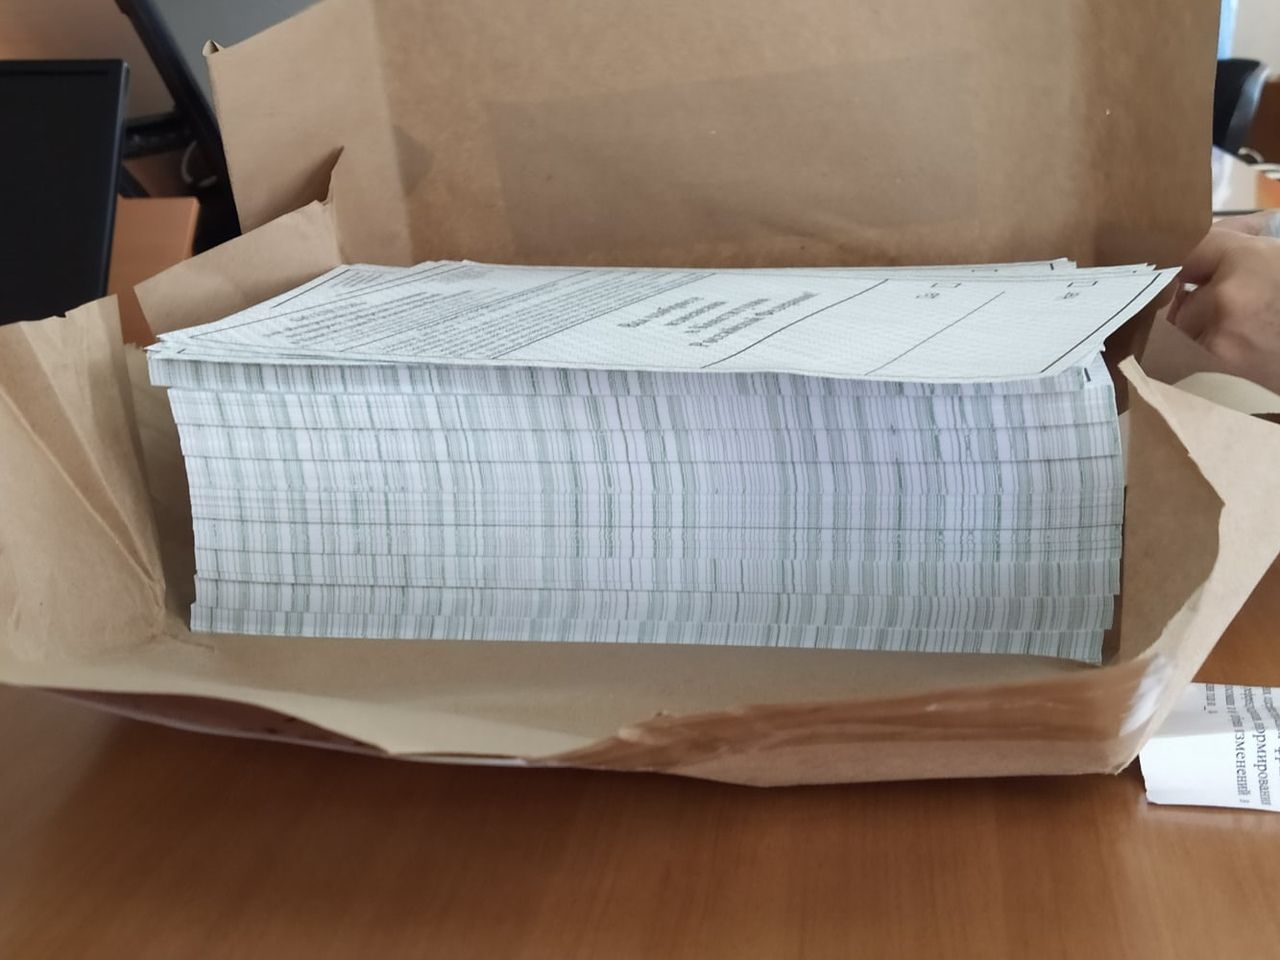 В Копейск привезли бюллетени для голосования. Как выглядит документ